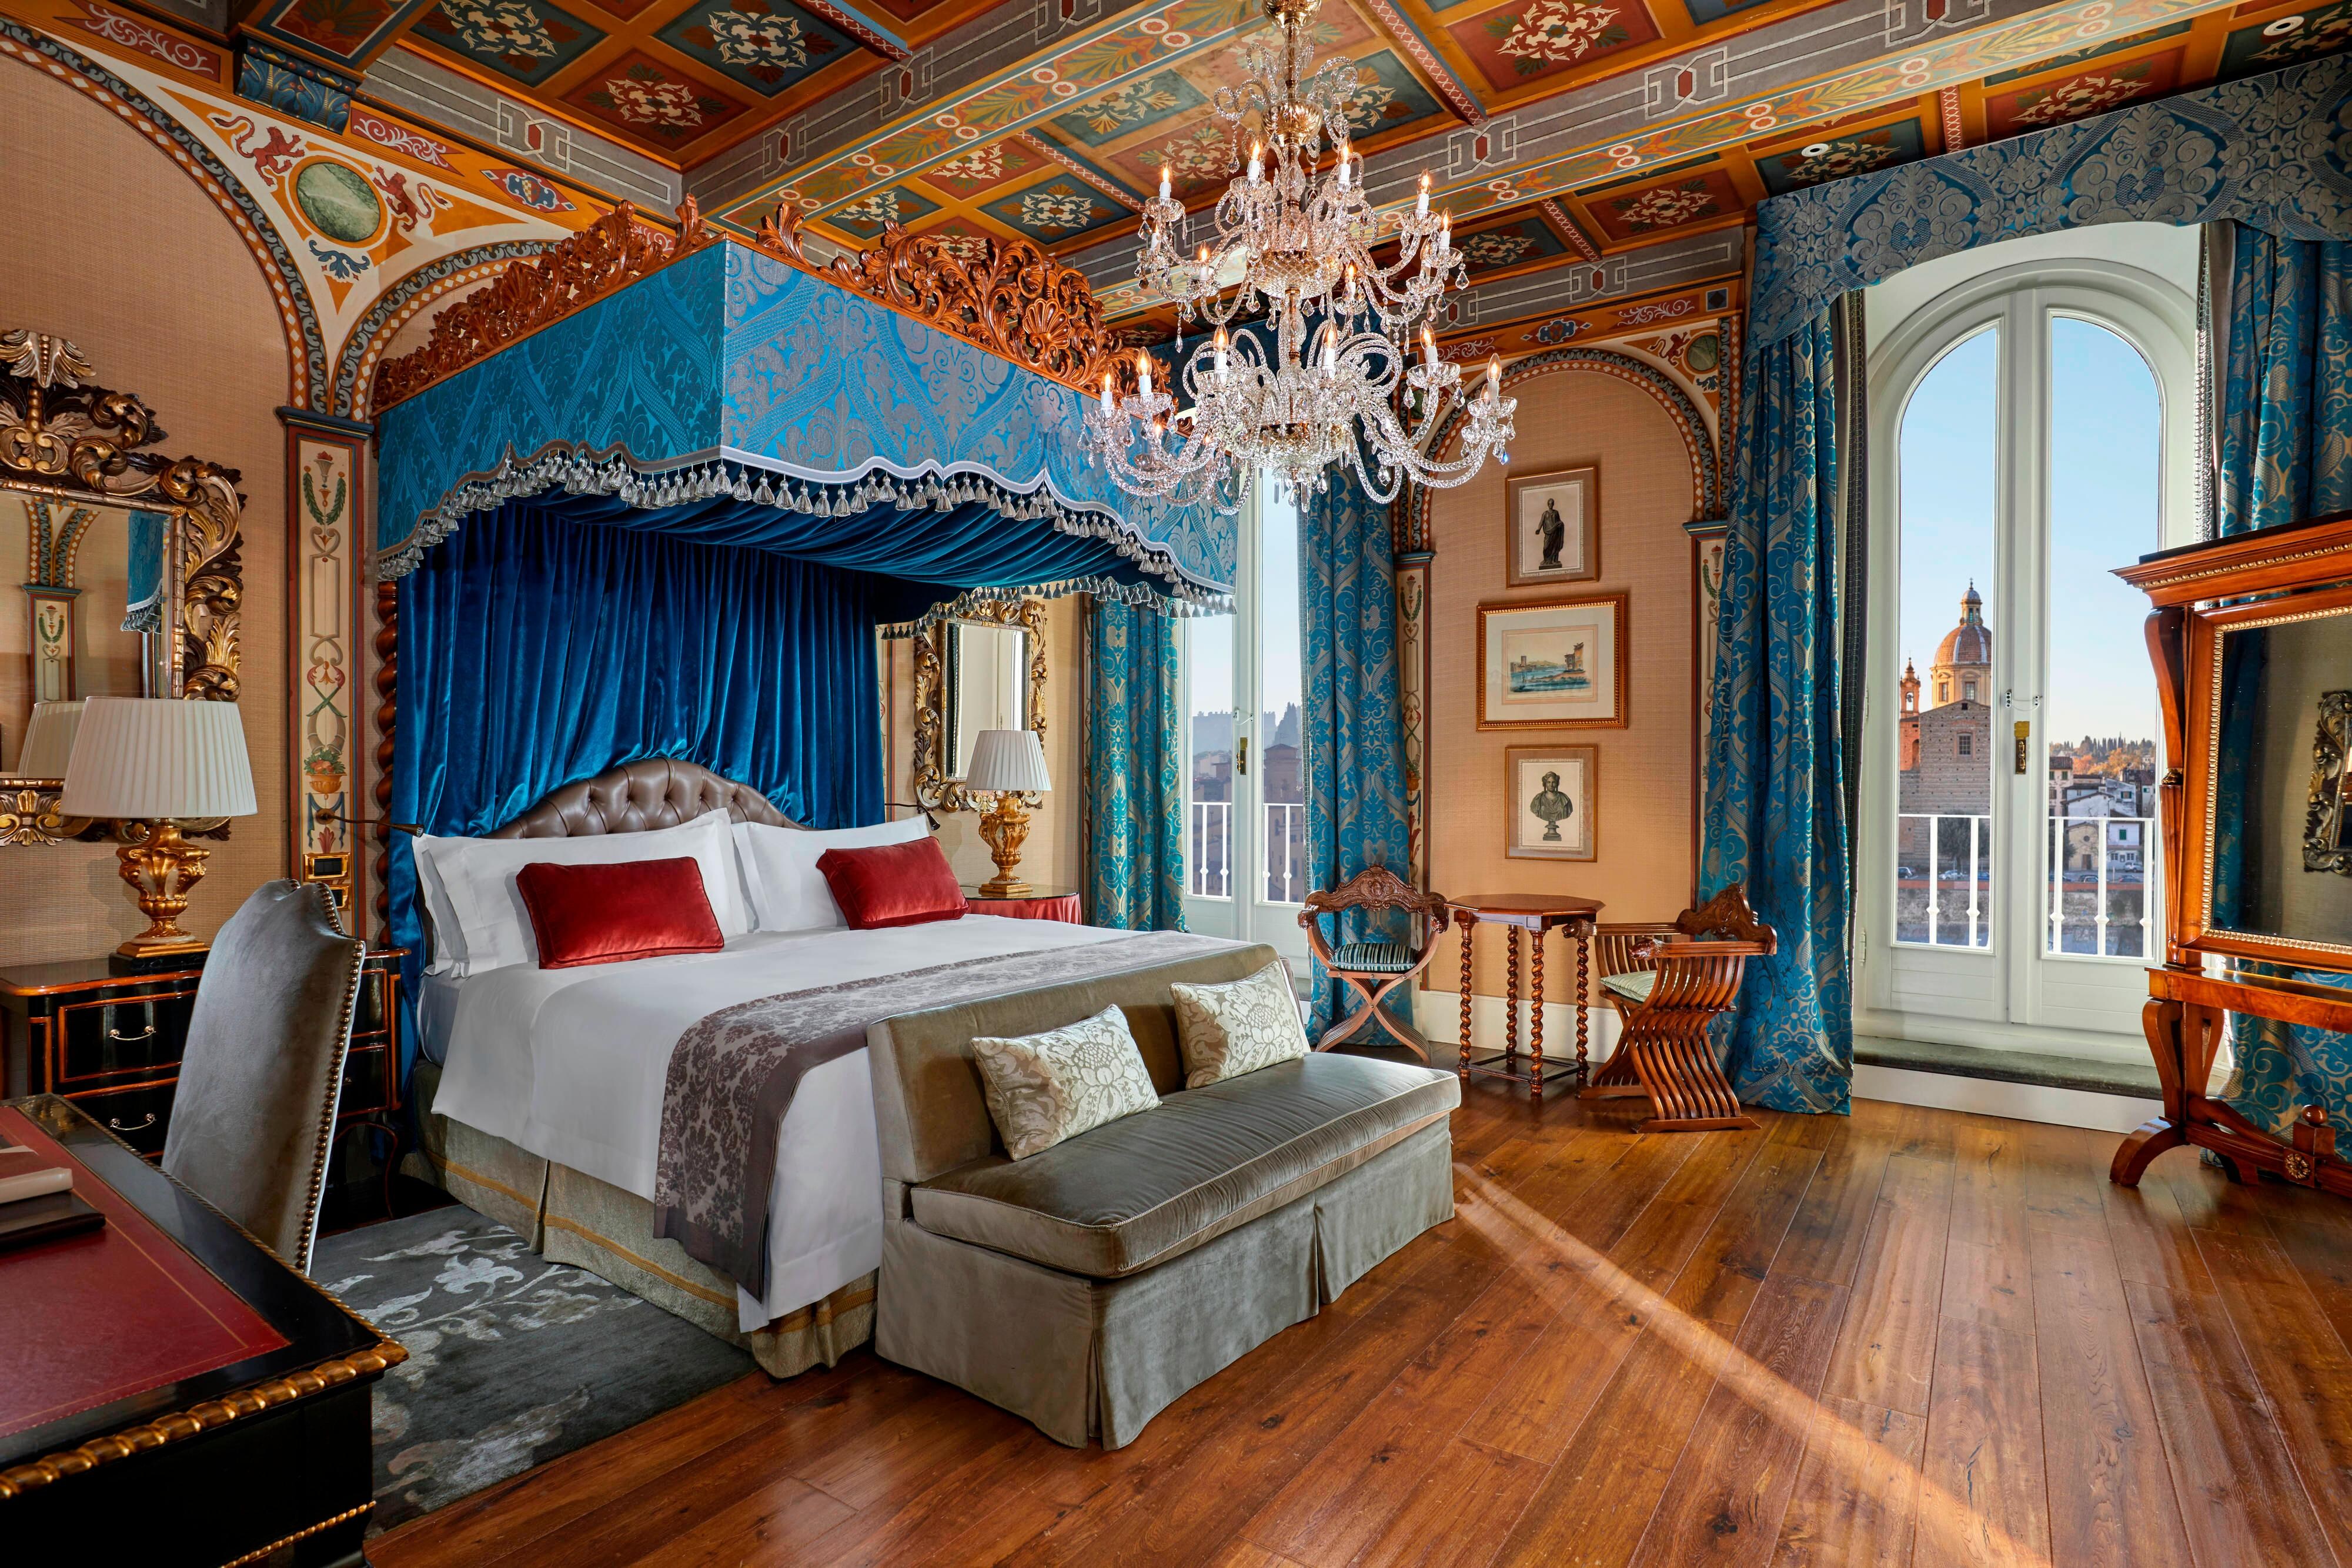 Royal Suite Gioconda Bedroom - Renaissance style